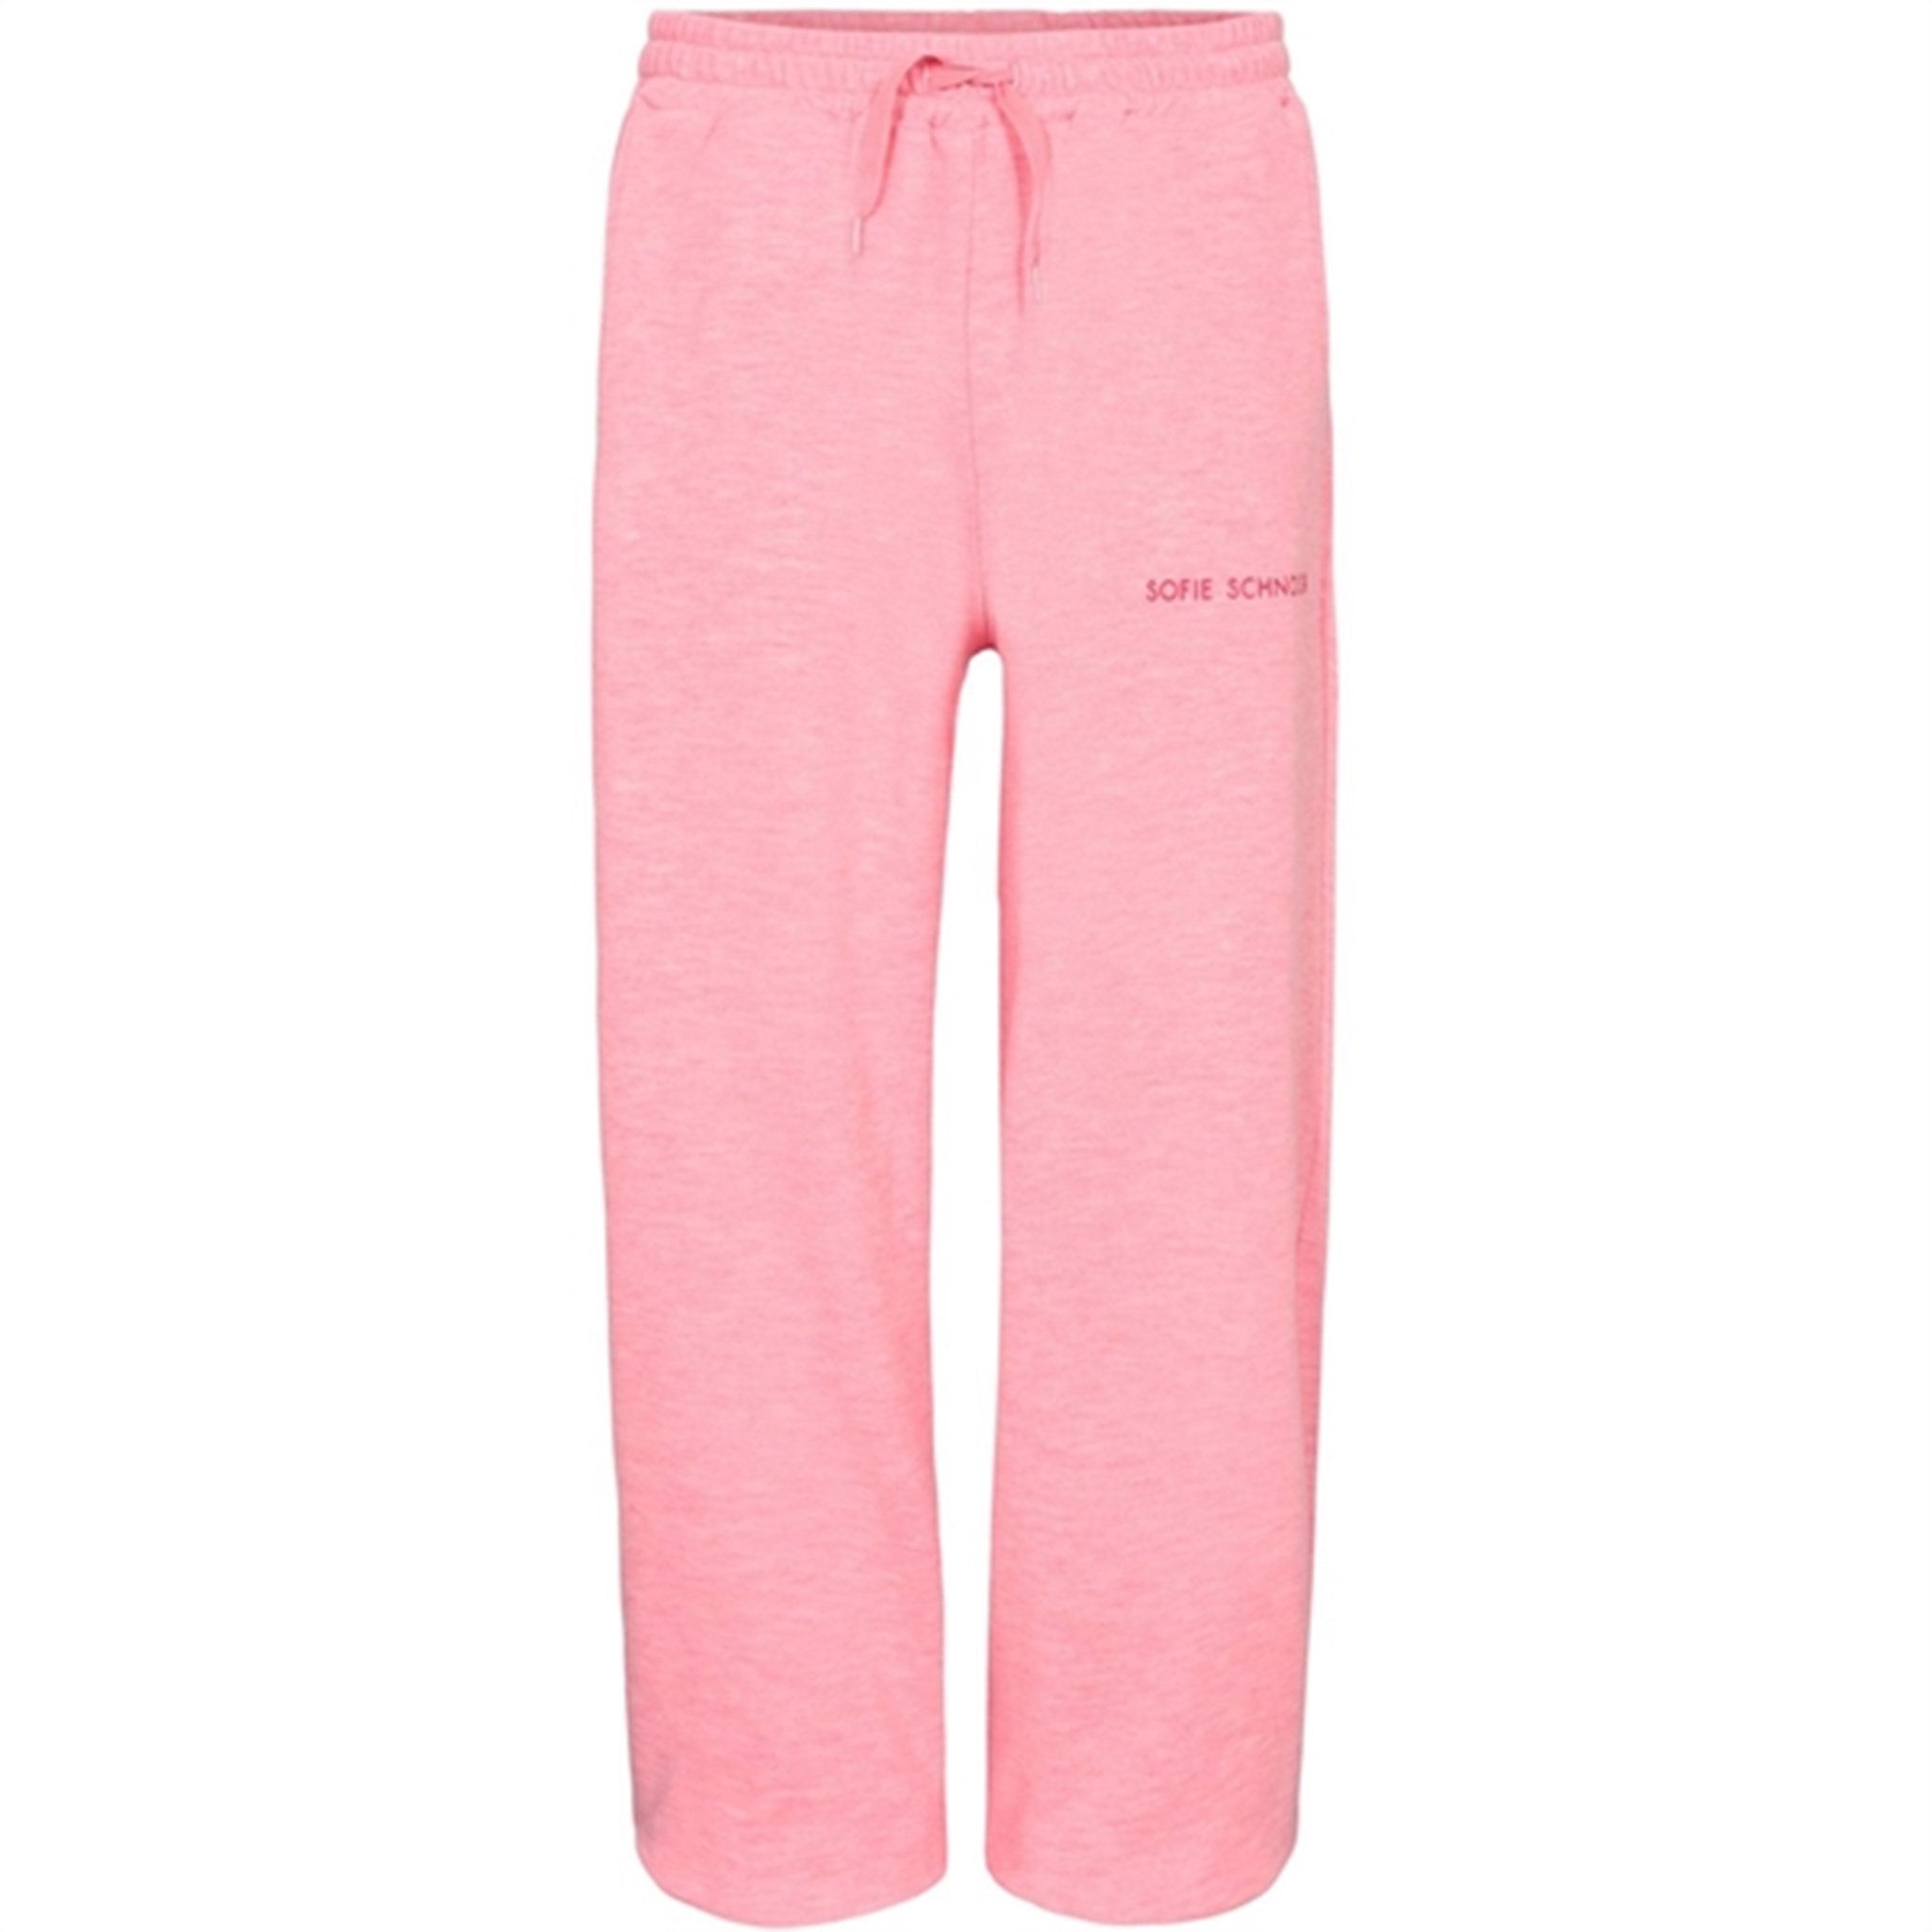 Sofie Schnoor Light Pink Sweatpants